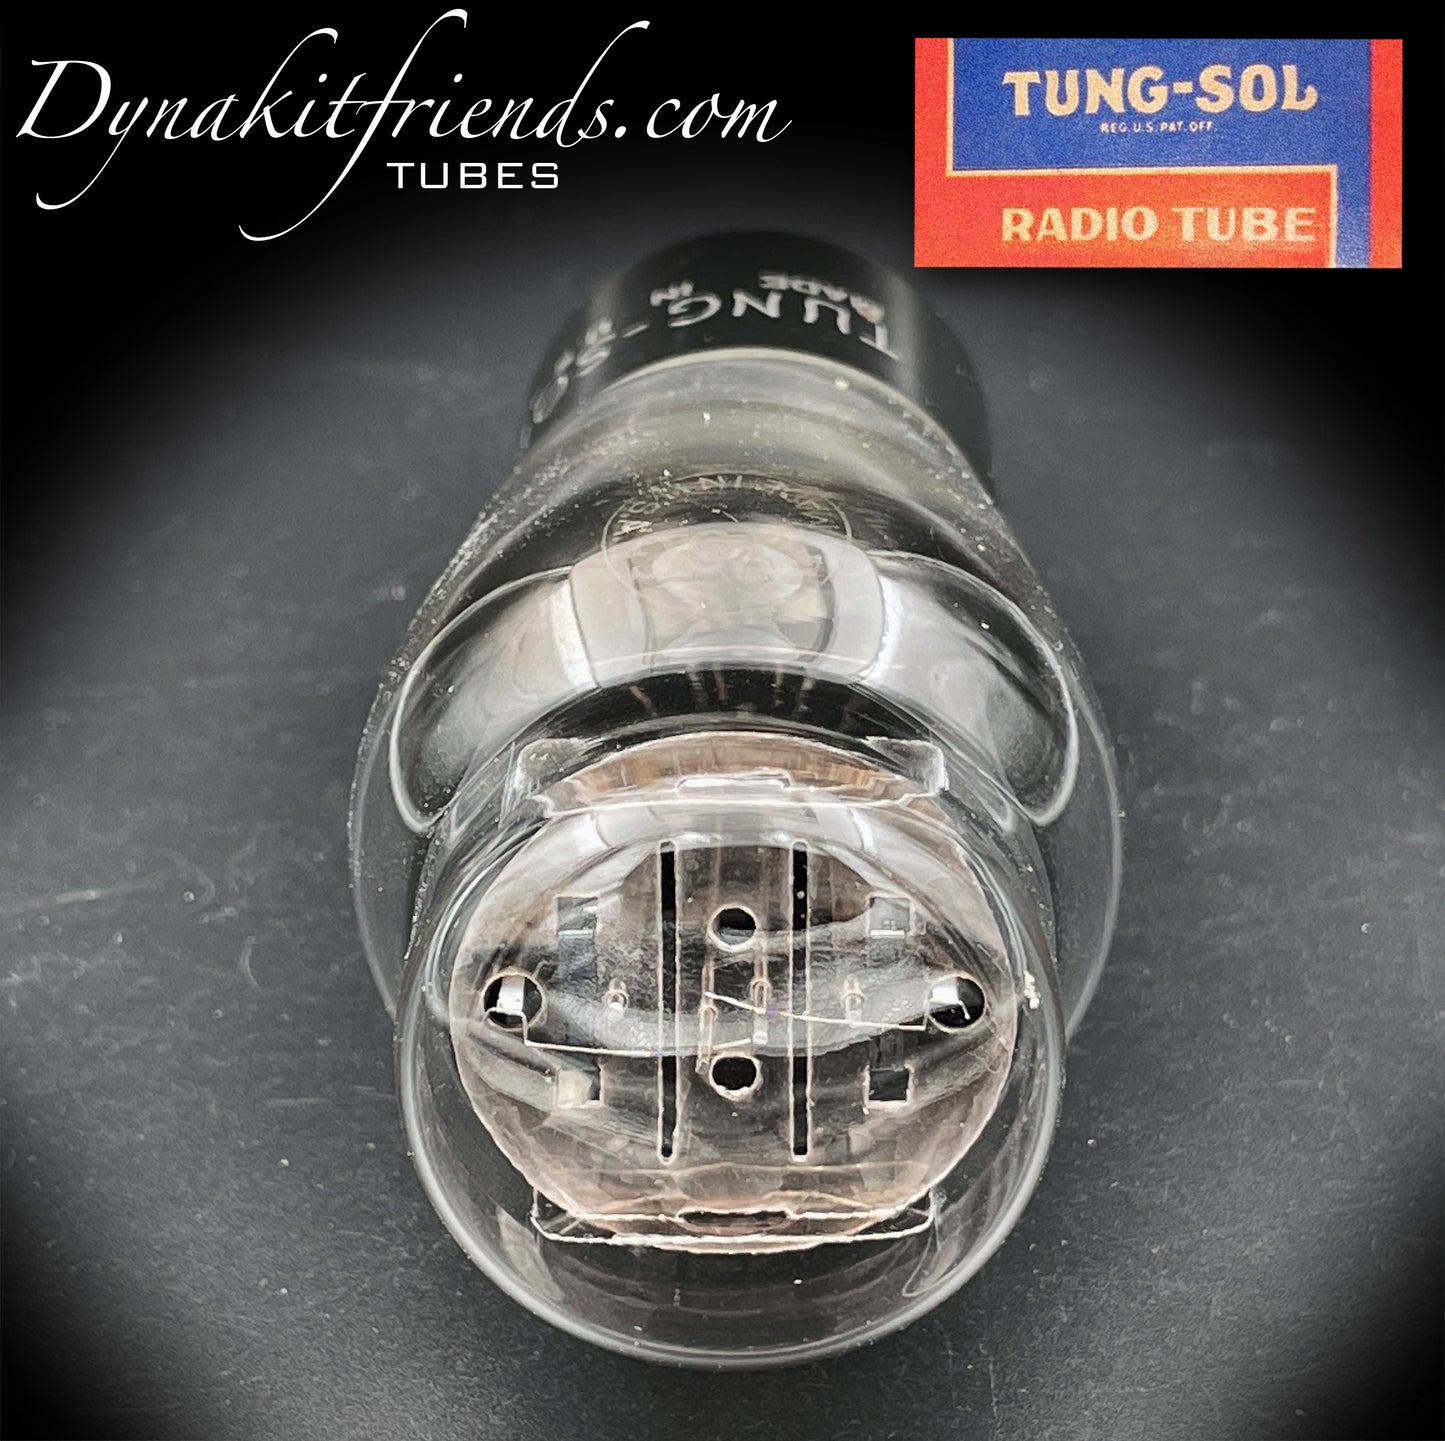 5Y3G (5Z2P) TUNG-SOL NOS hängende Filamente, schwarze gerippte Platten, Folien-Getterrohr-Gleichrichter, hergestellt in den USA